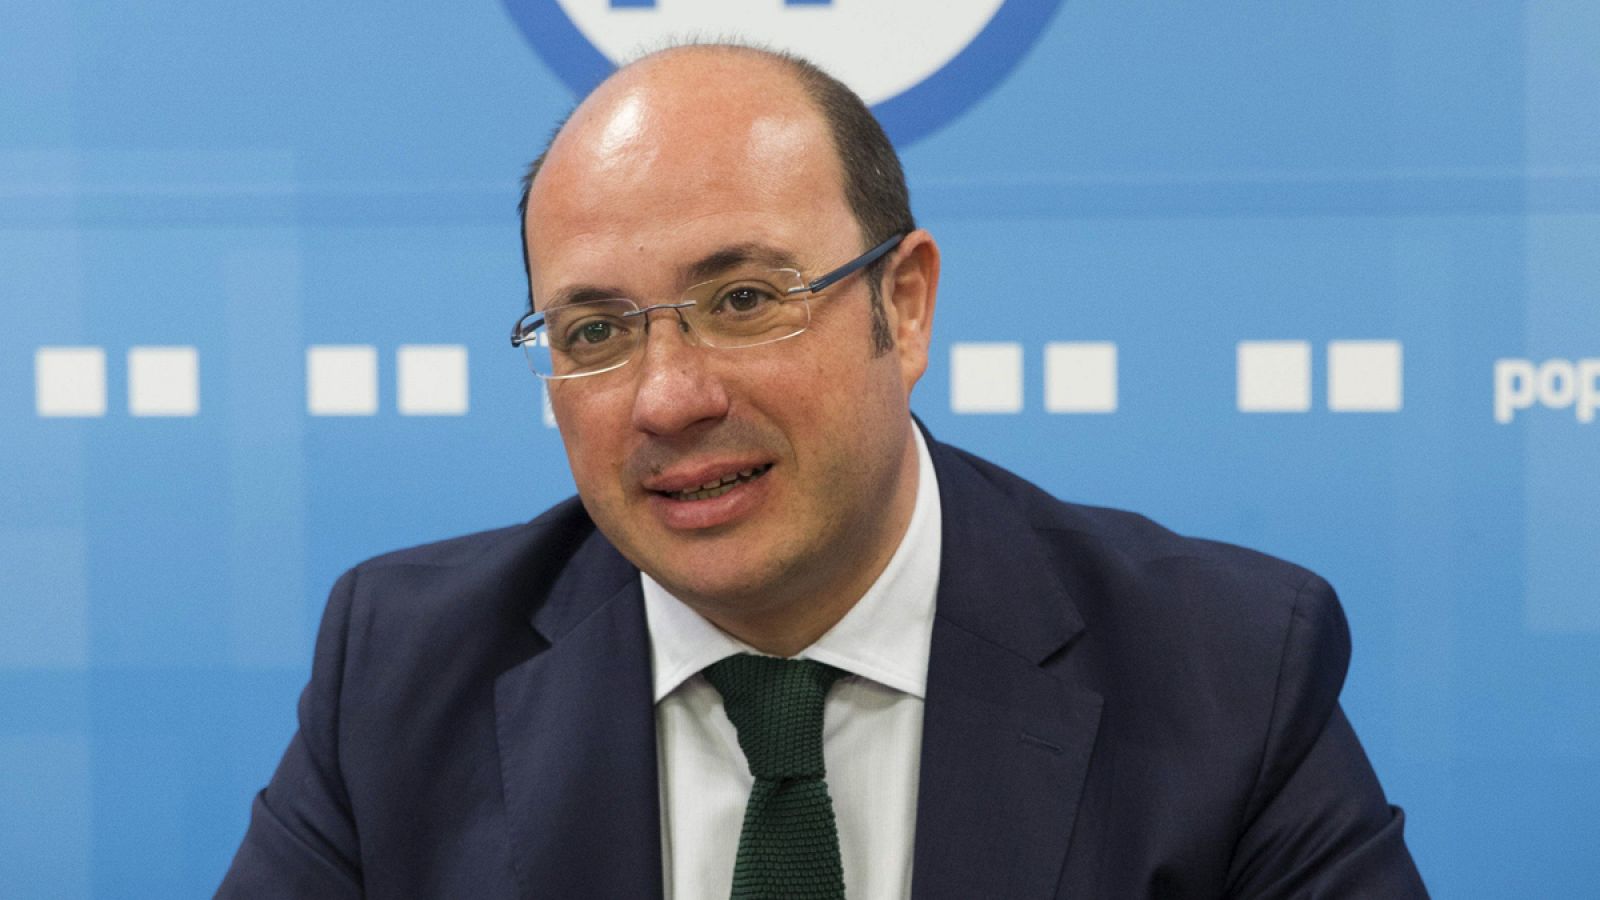 El presidente de la Región de Murcia, Pedro Antonio Sánchez